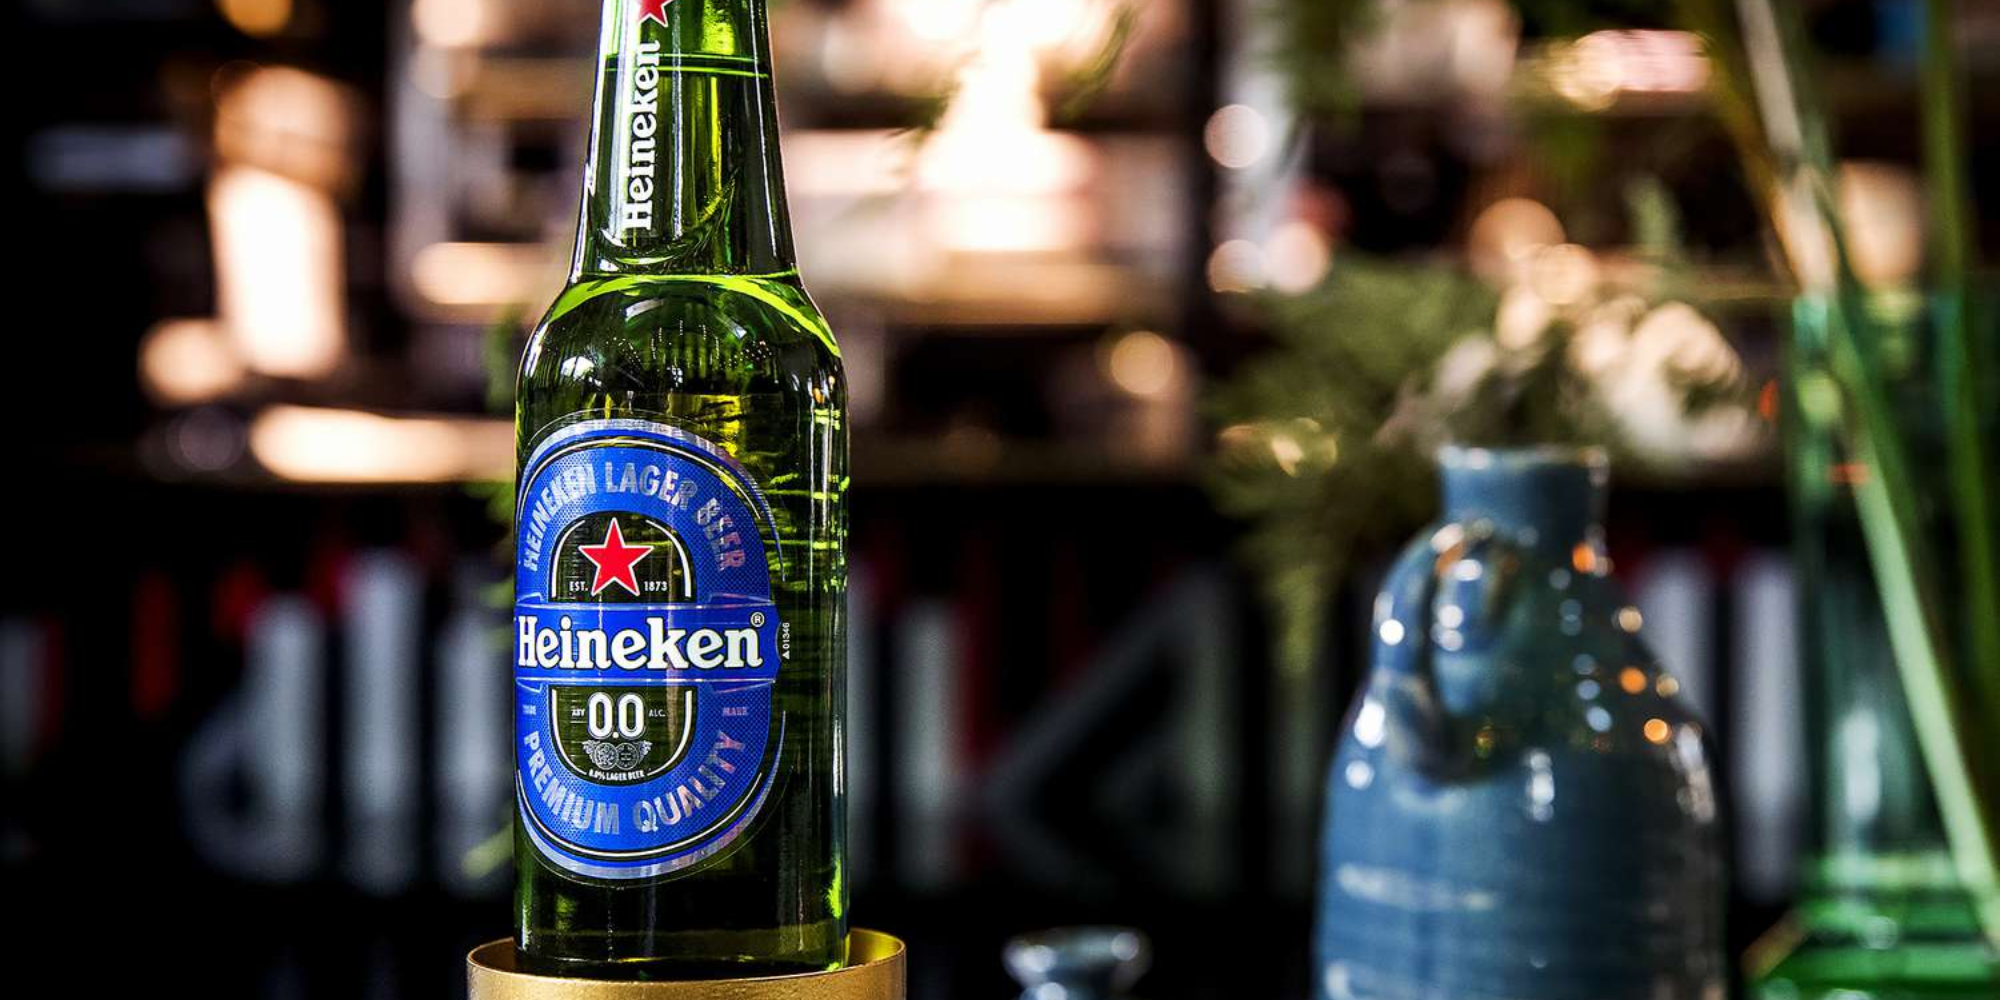 Heineken tackling Dry Jan!